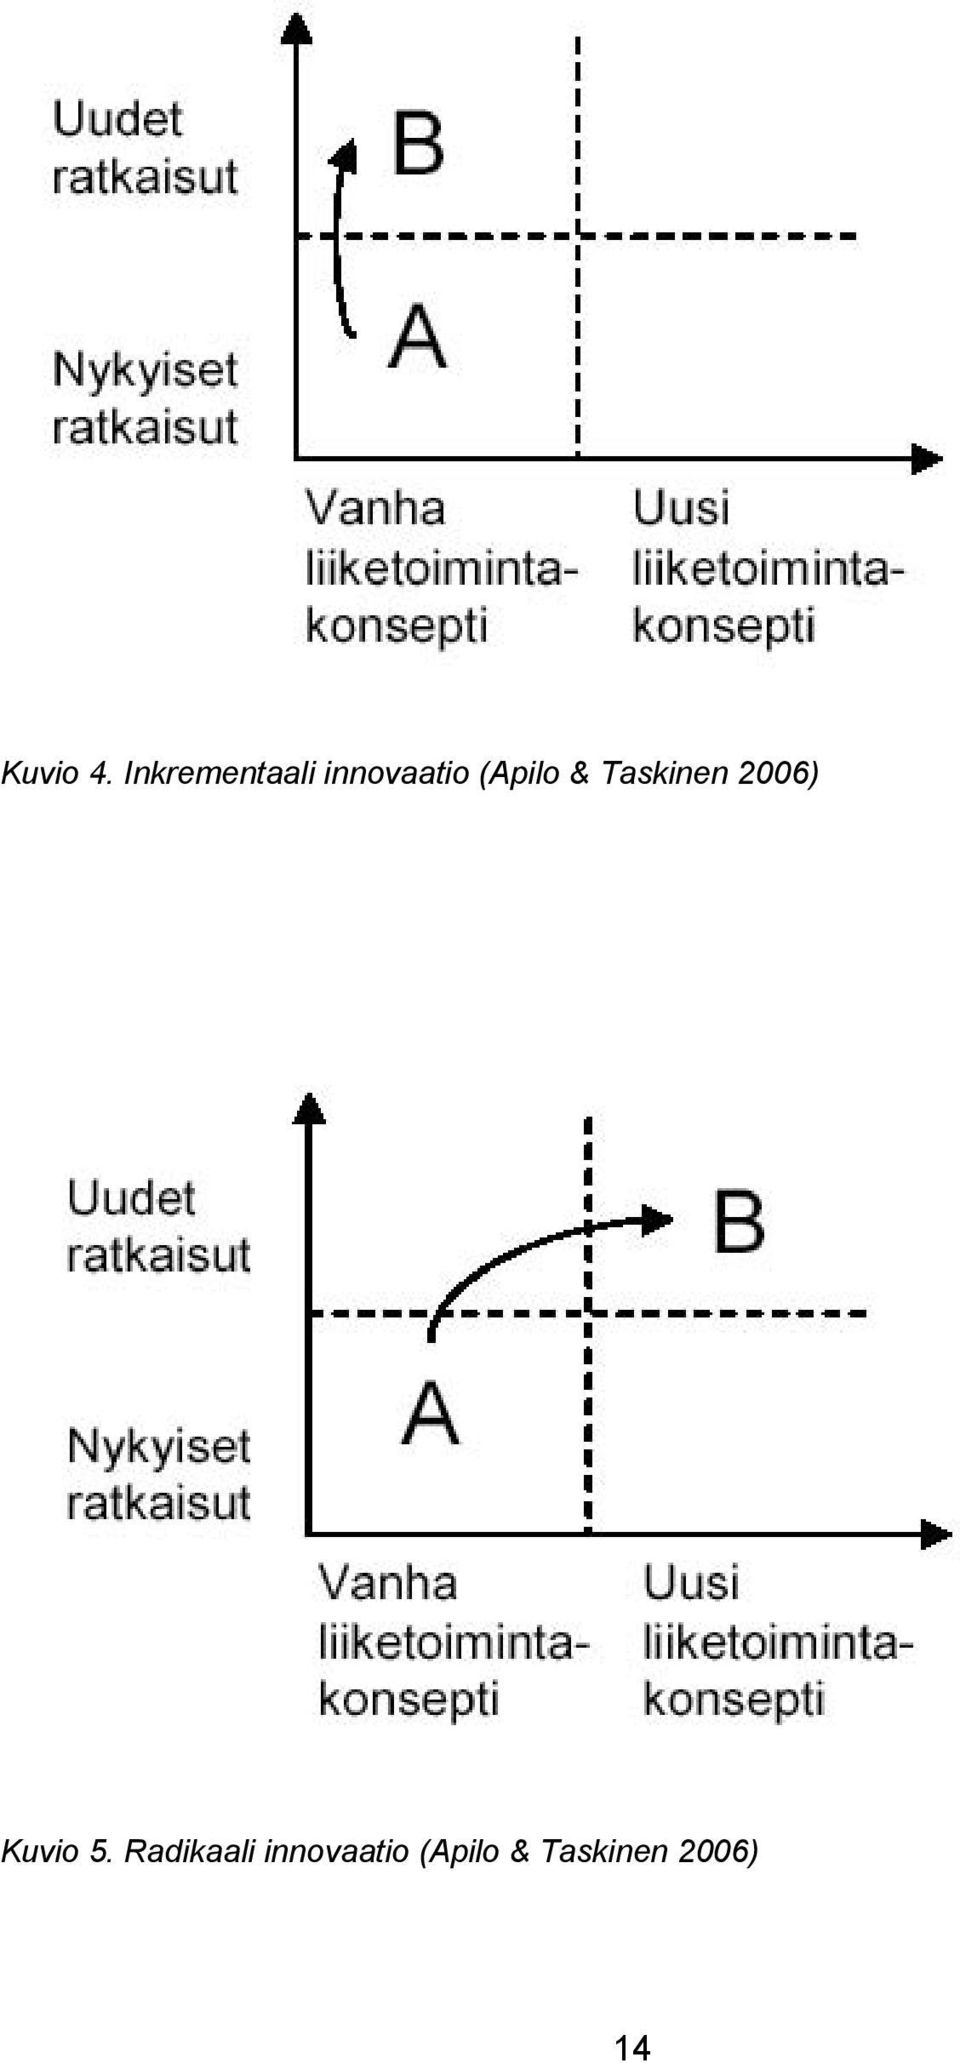 (Apilo & Taskinen 2006)